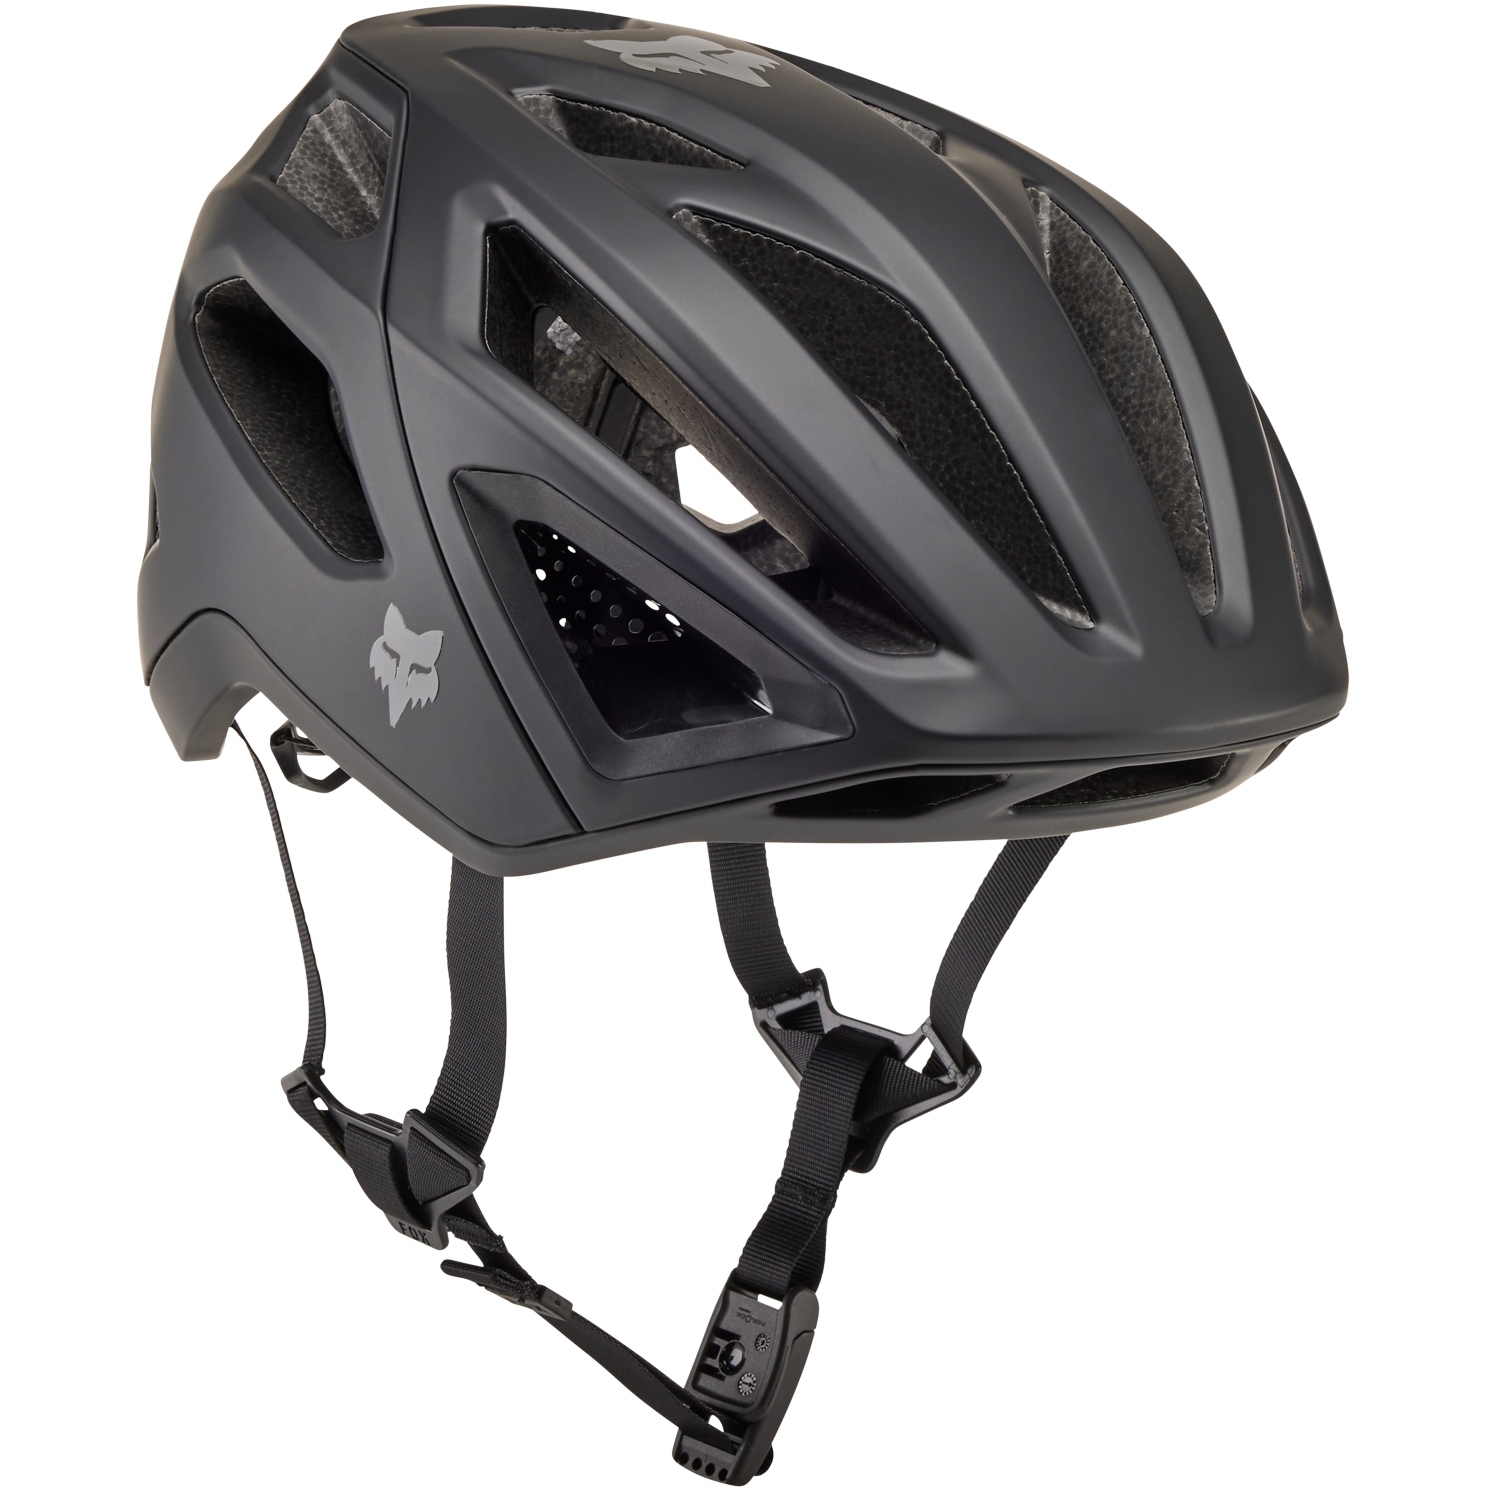 Produktbild von FOX Crossframe Pro MTB Helm - matte black